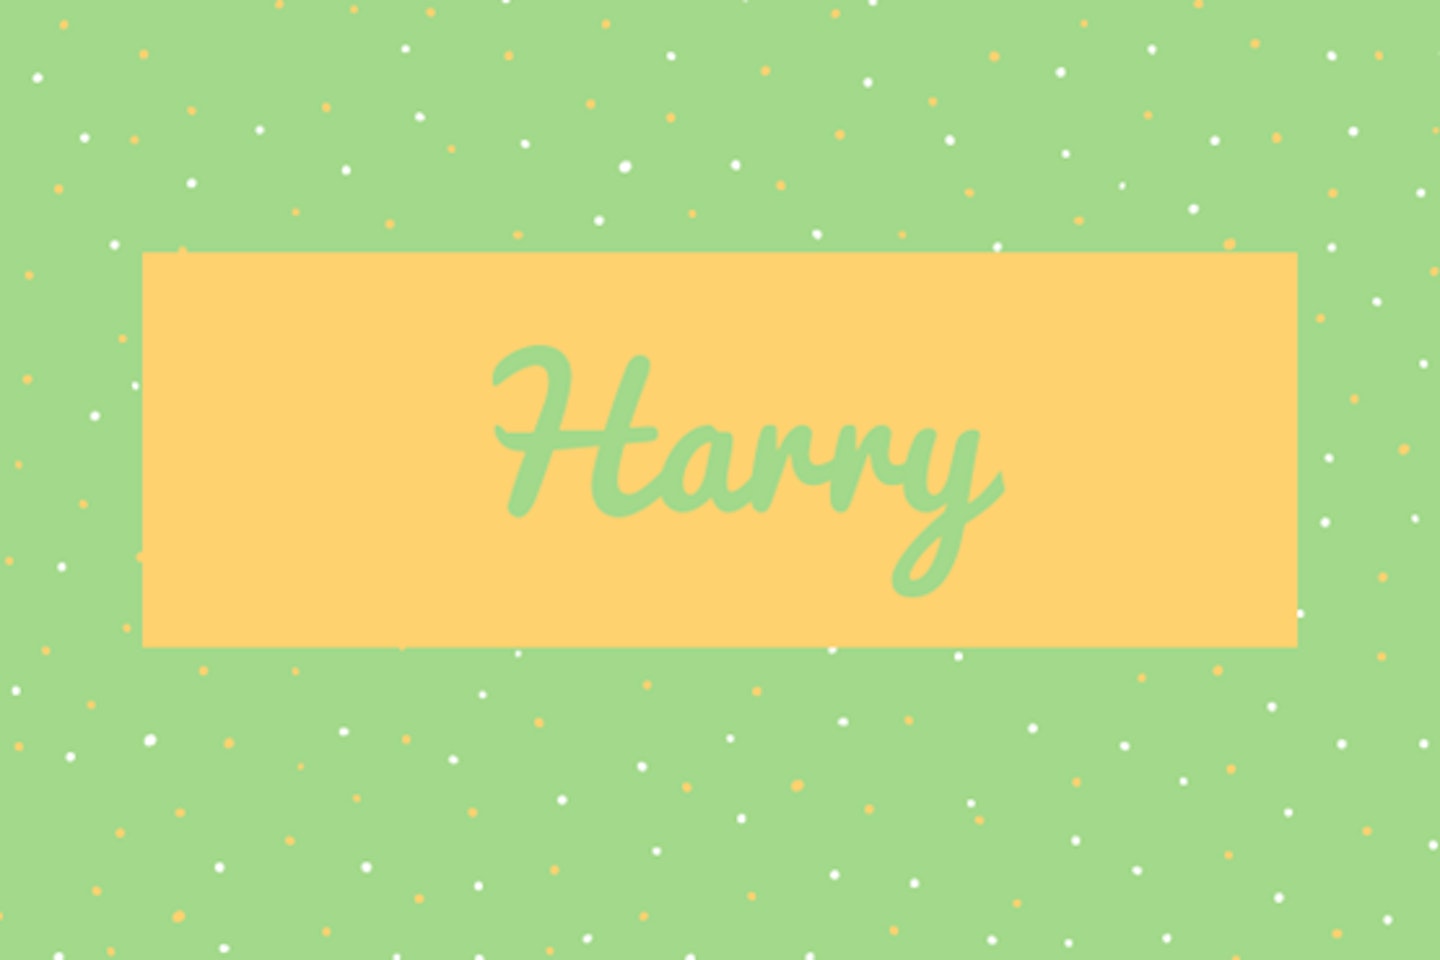 44) Harry